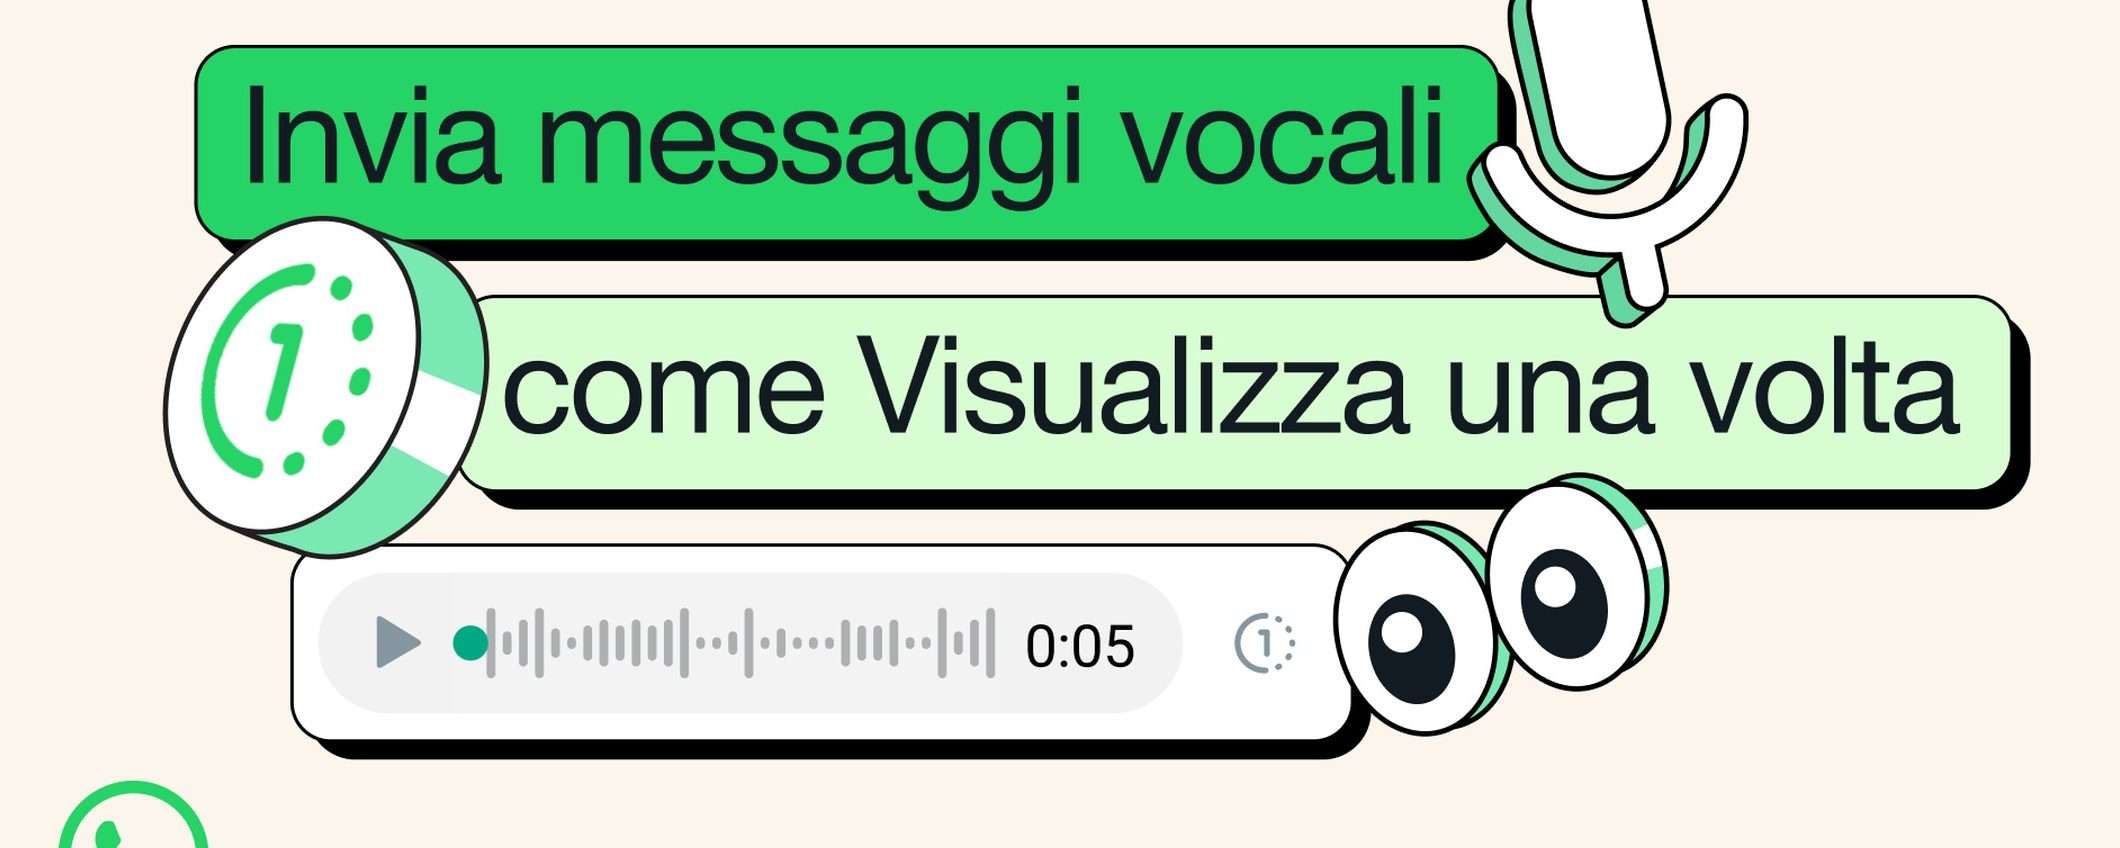 WhatsApp: messaggi vocali con autodistruzione